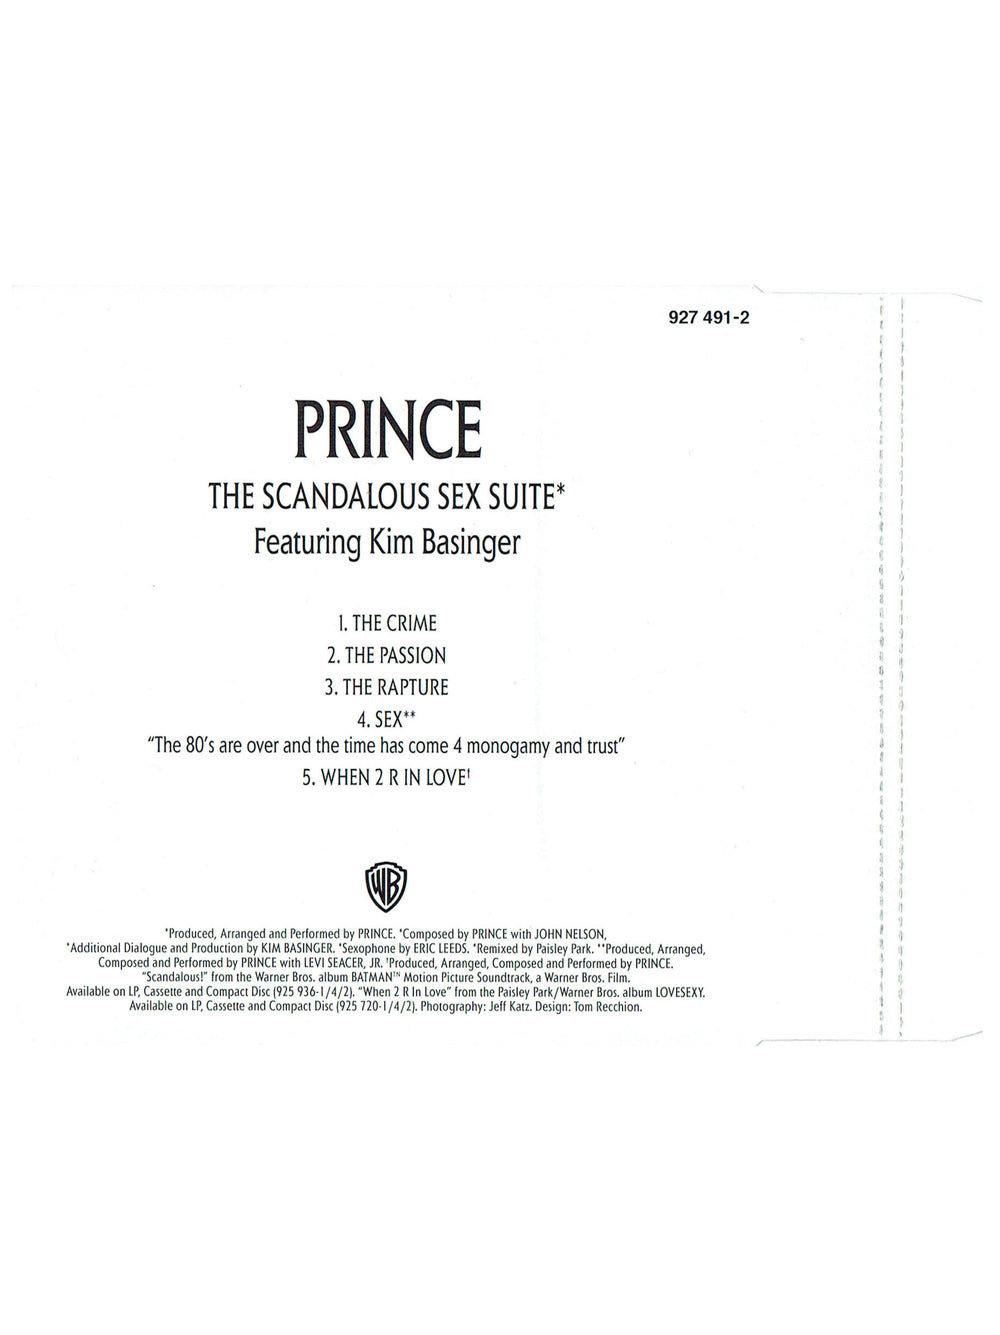 Prince Scandalous Sex Suite Original CD Maxi Single EU Release 1989 Original